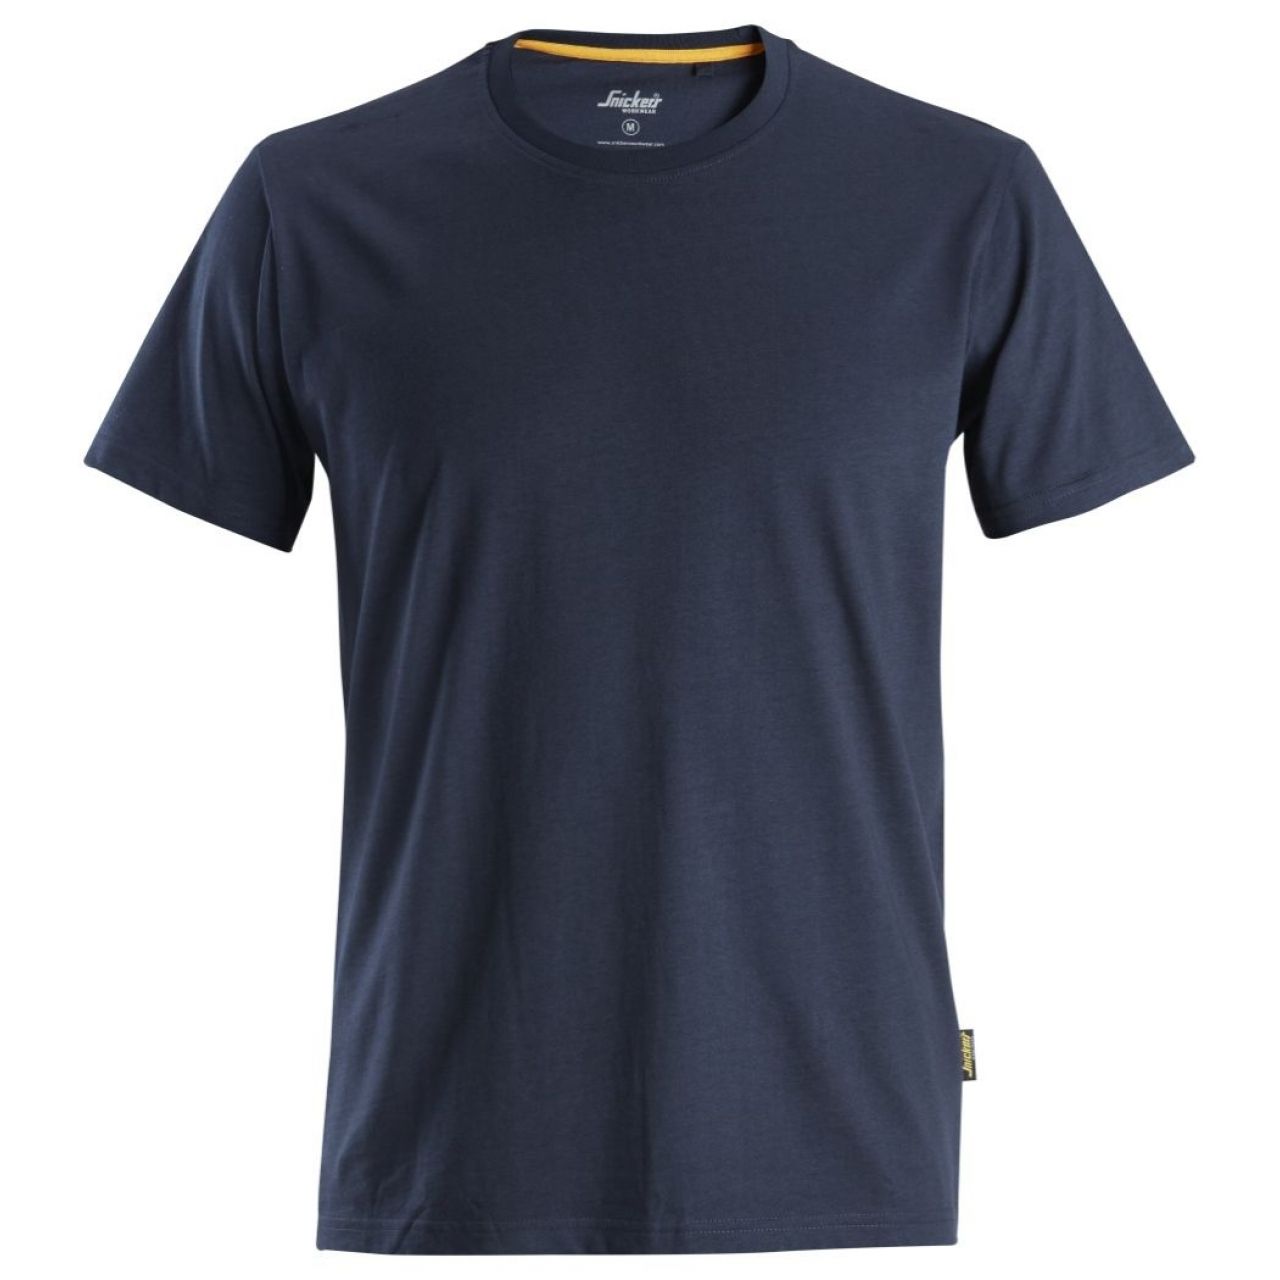 Camiseta de algodón orgánico AllroundWork Azul marino talla S